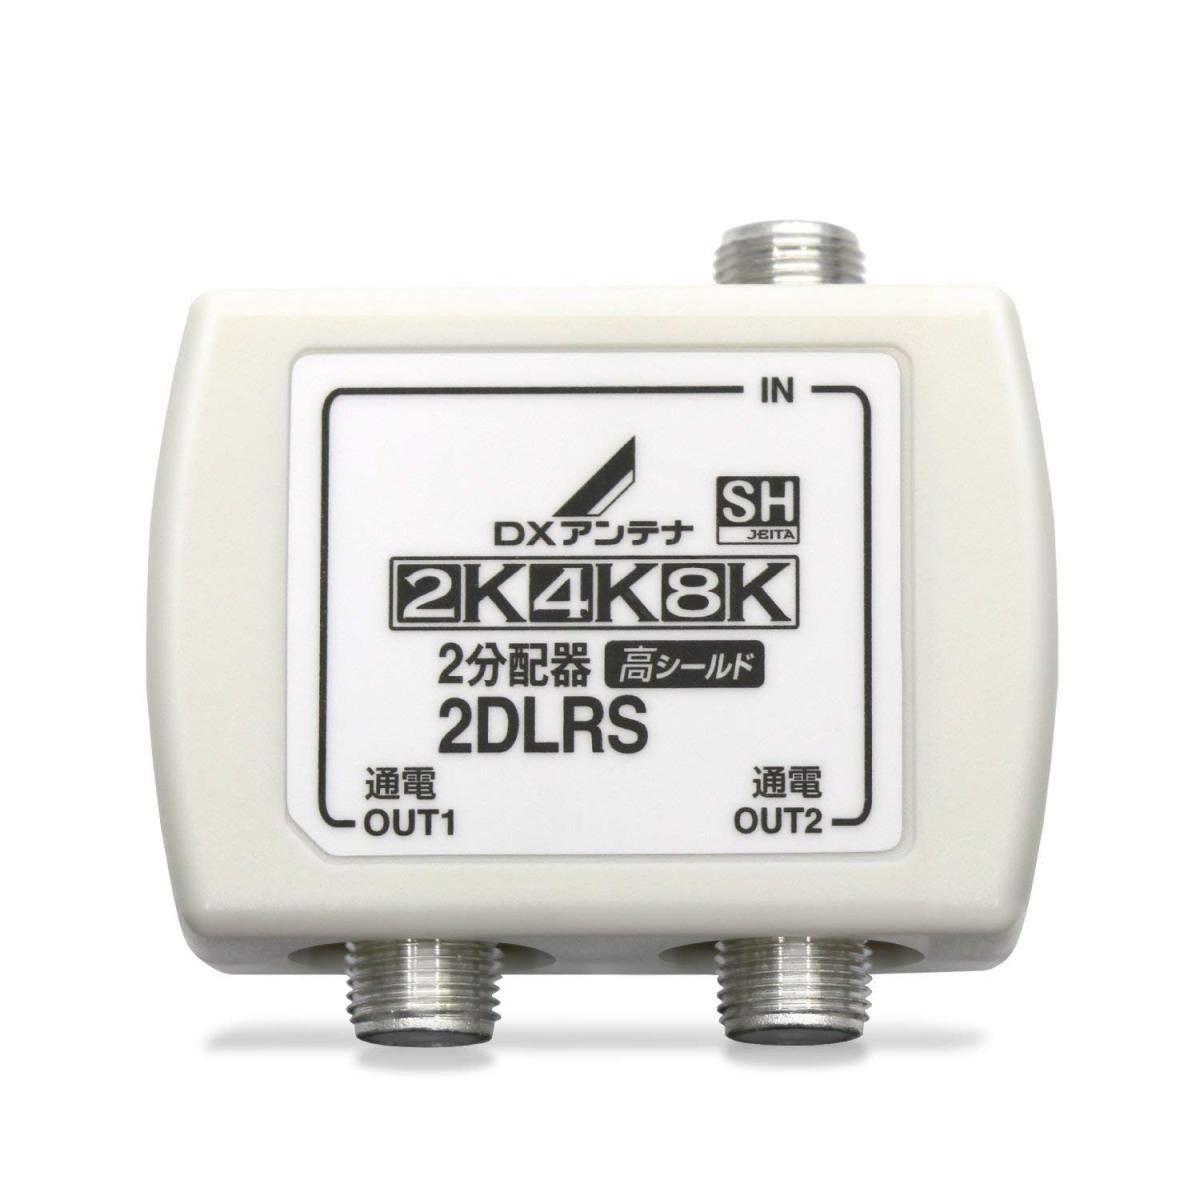 DXアンテナ 分配器 2K 4K 8K 対応 2分配 全端子間通電 金メッキプラグ F型端子 2DLRS(B)